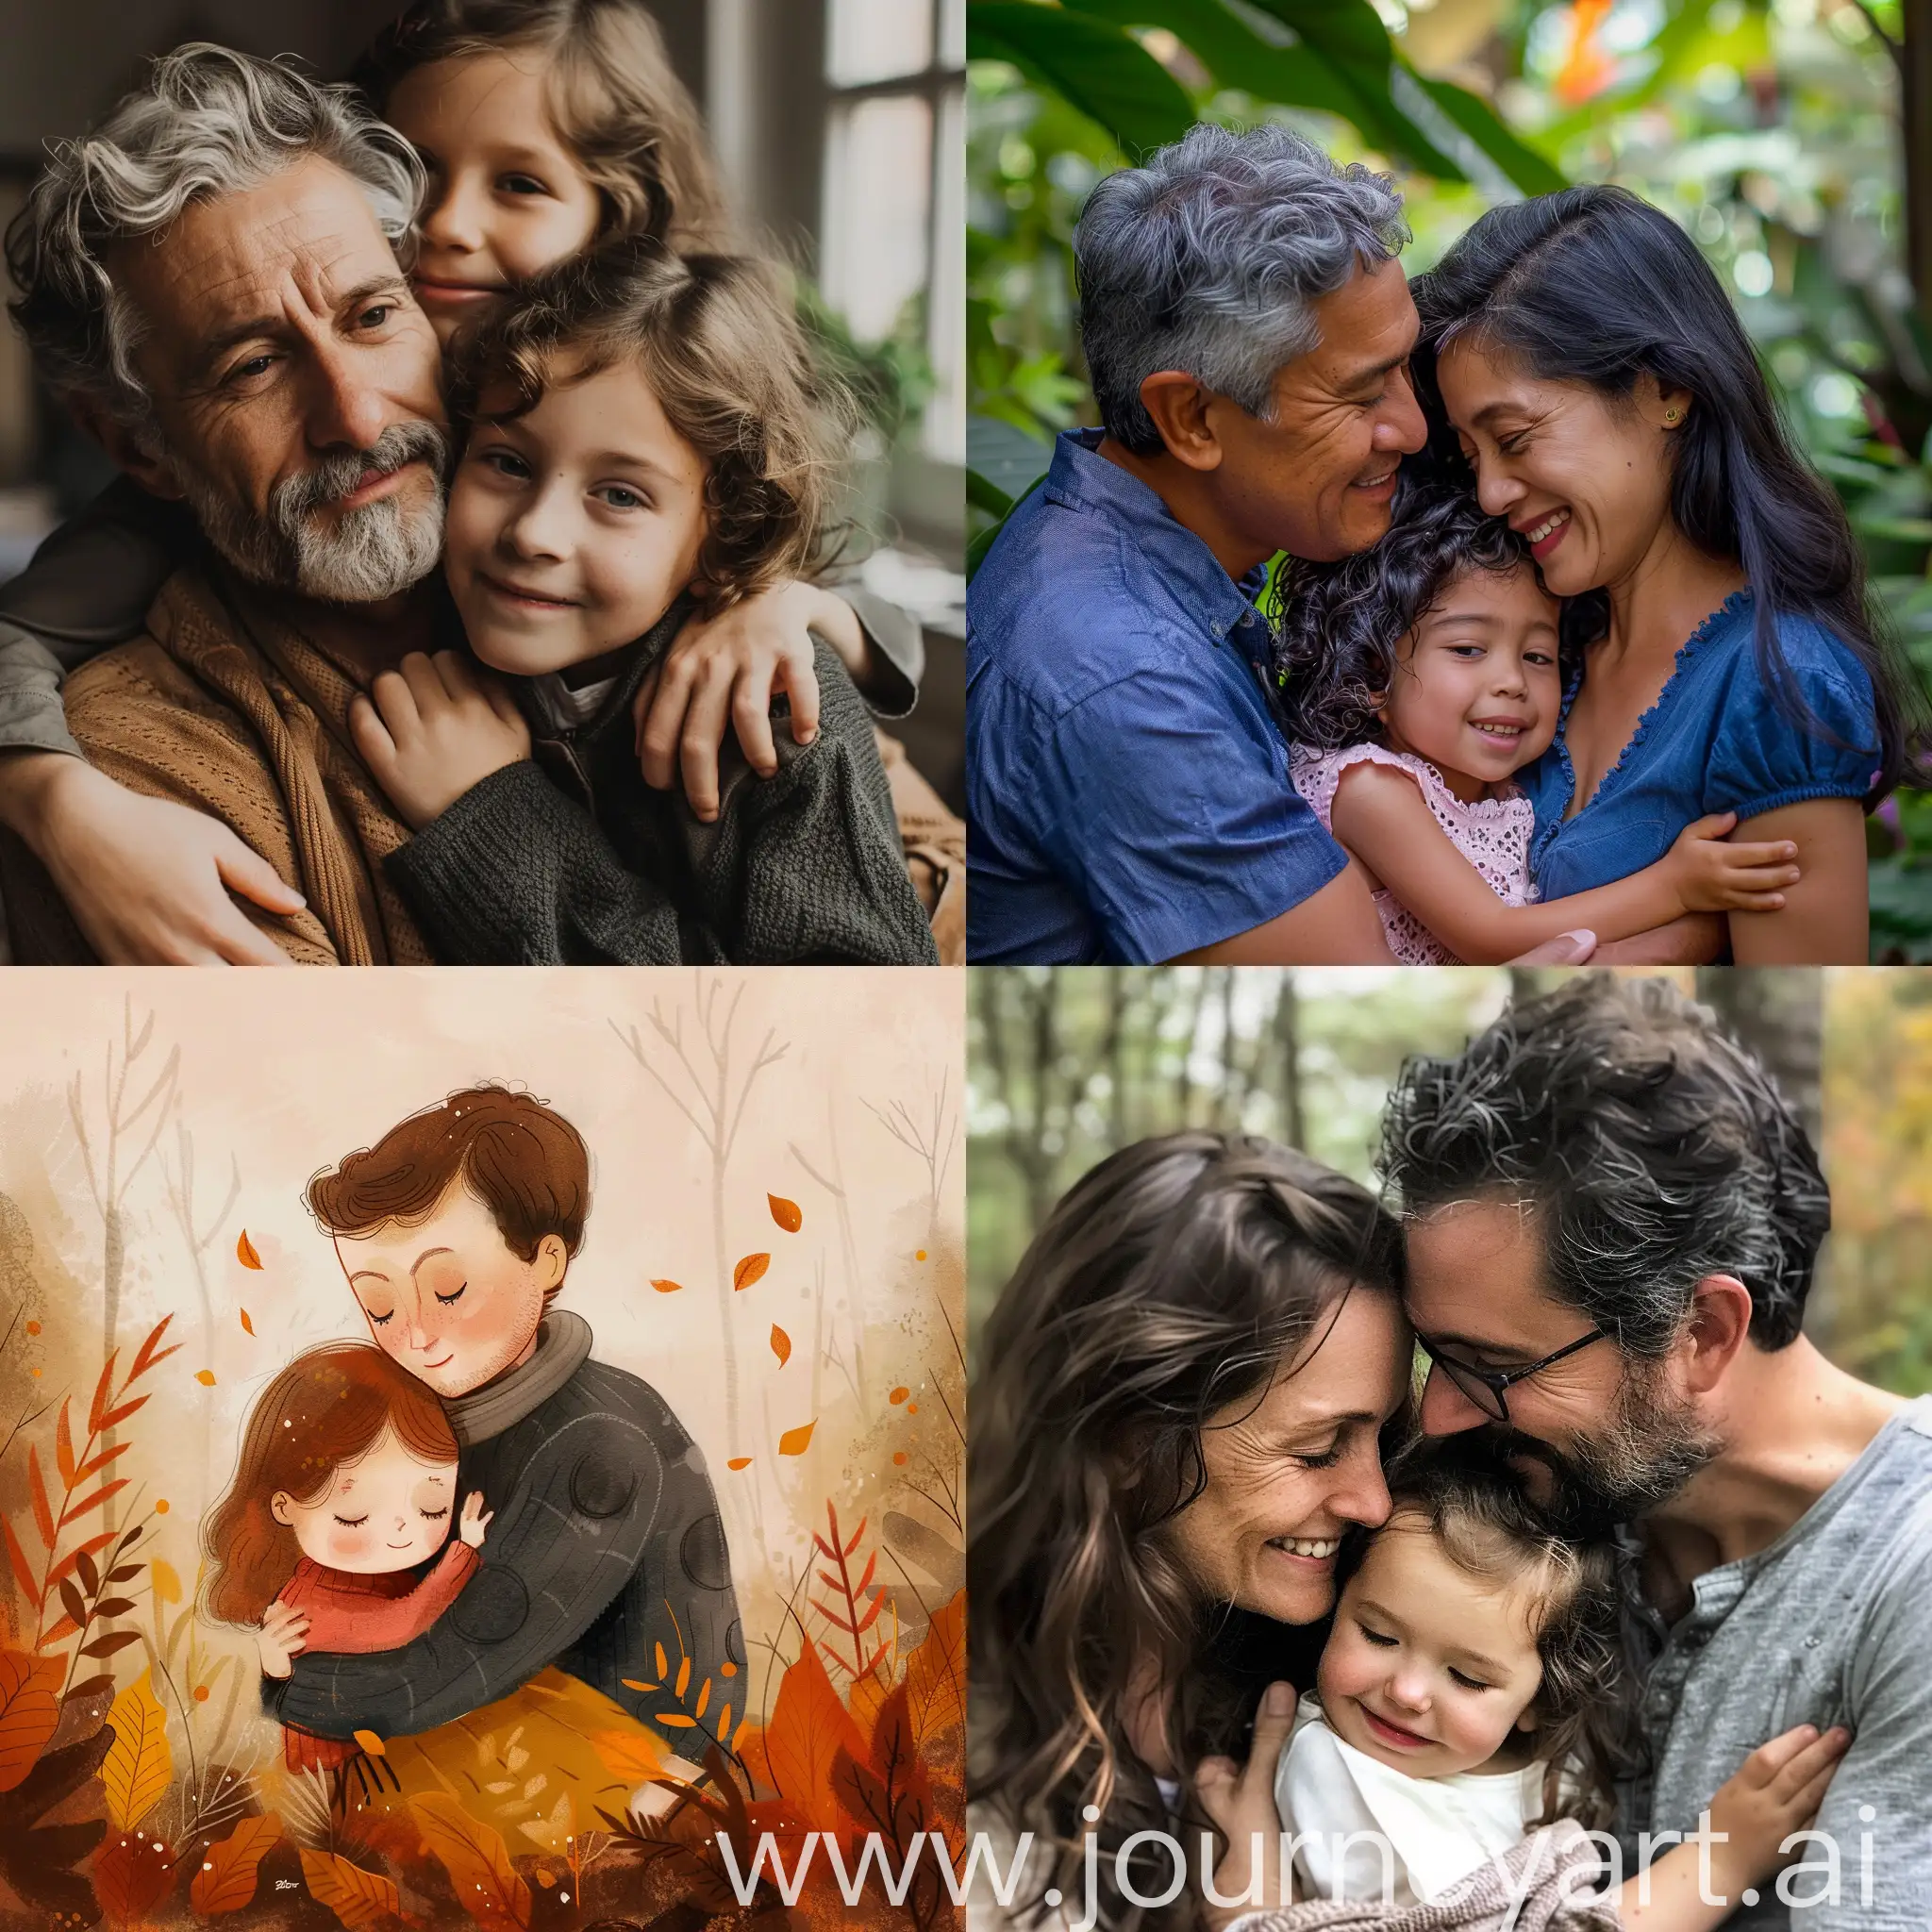 Unconditional-Parental-Love-Heartwarming-Embrace-of-Parents